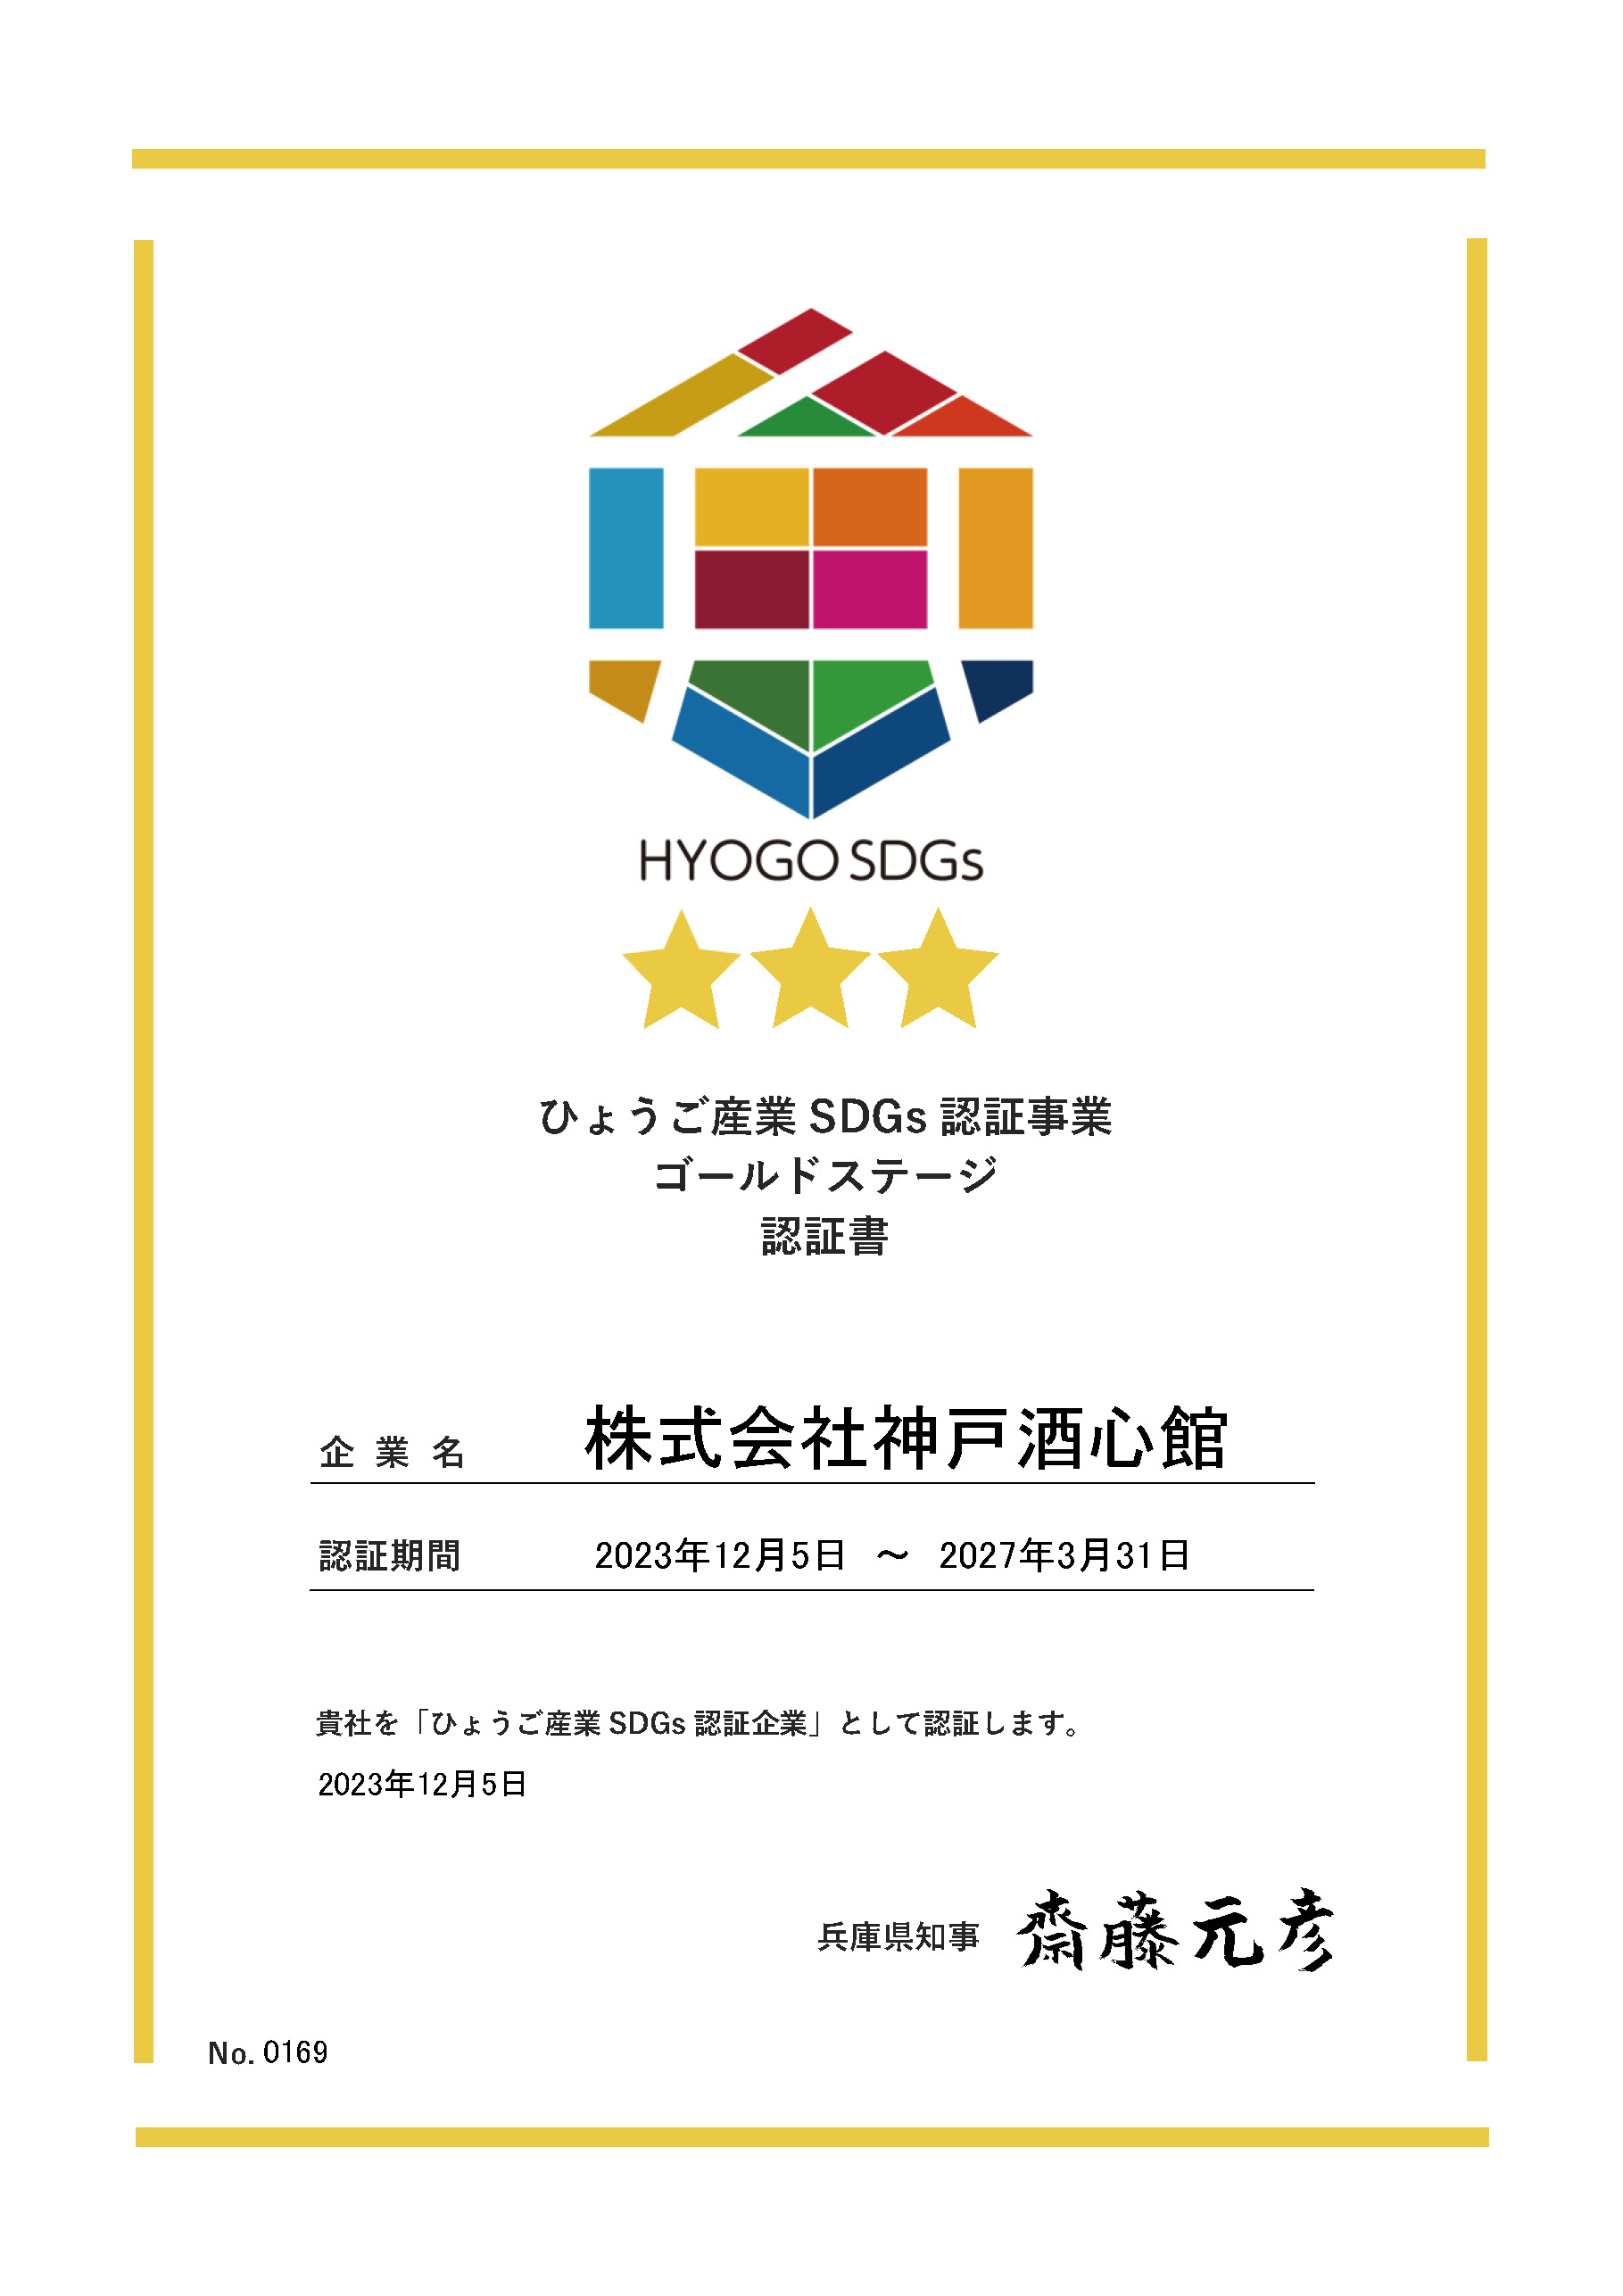 ひょうご産業SDGs認証事業で「ゴールドステージ」に神戸酒心館が認証されました。